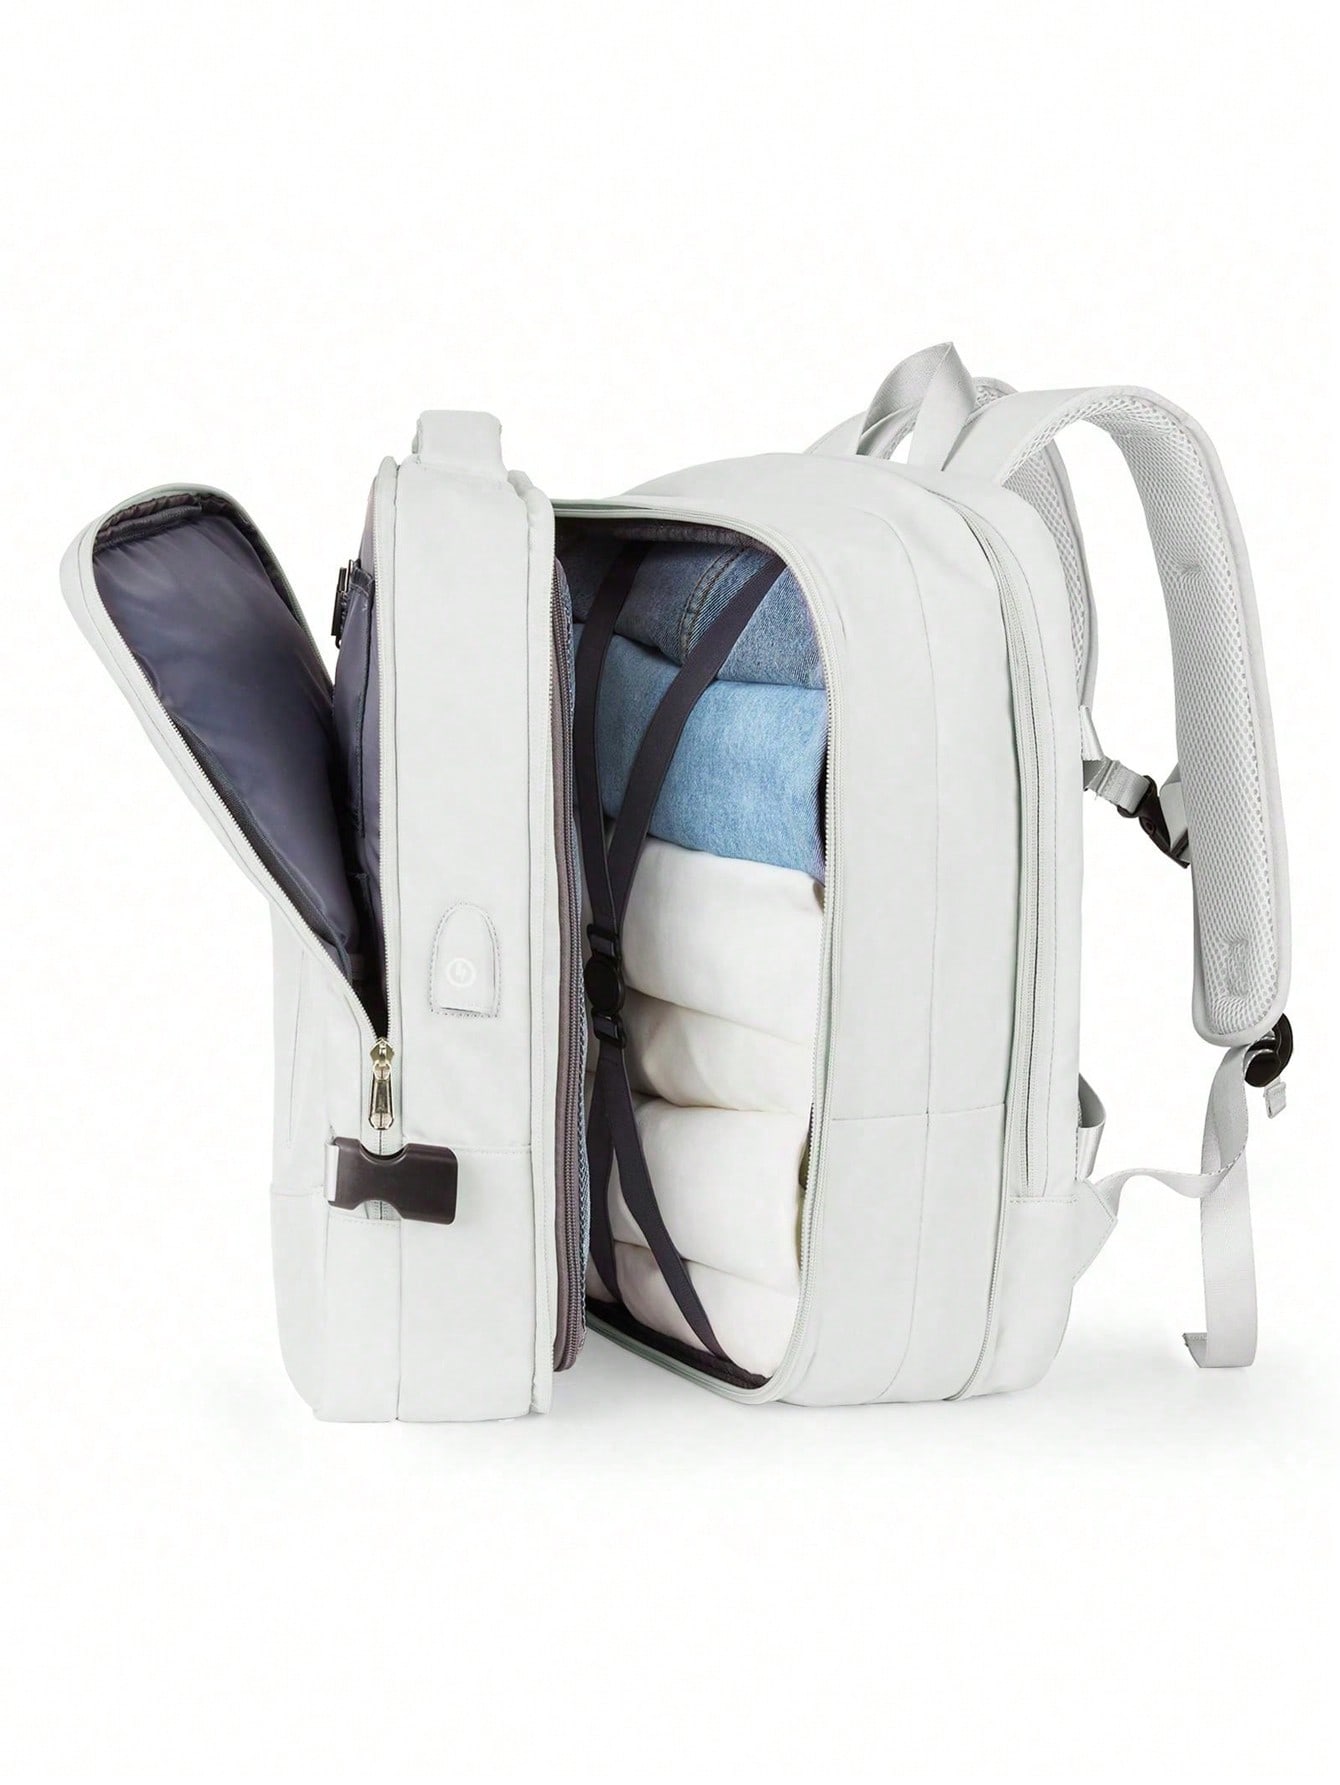 Мужской модный многофункциональный рюкзак большой вместимости с выдвижными лямками и множеством карманов для путешествий и компьютера, белый